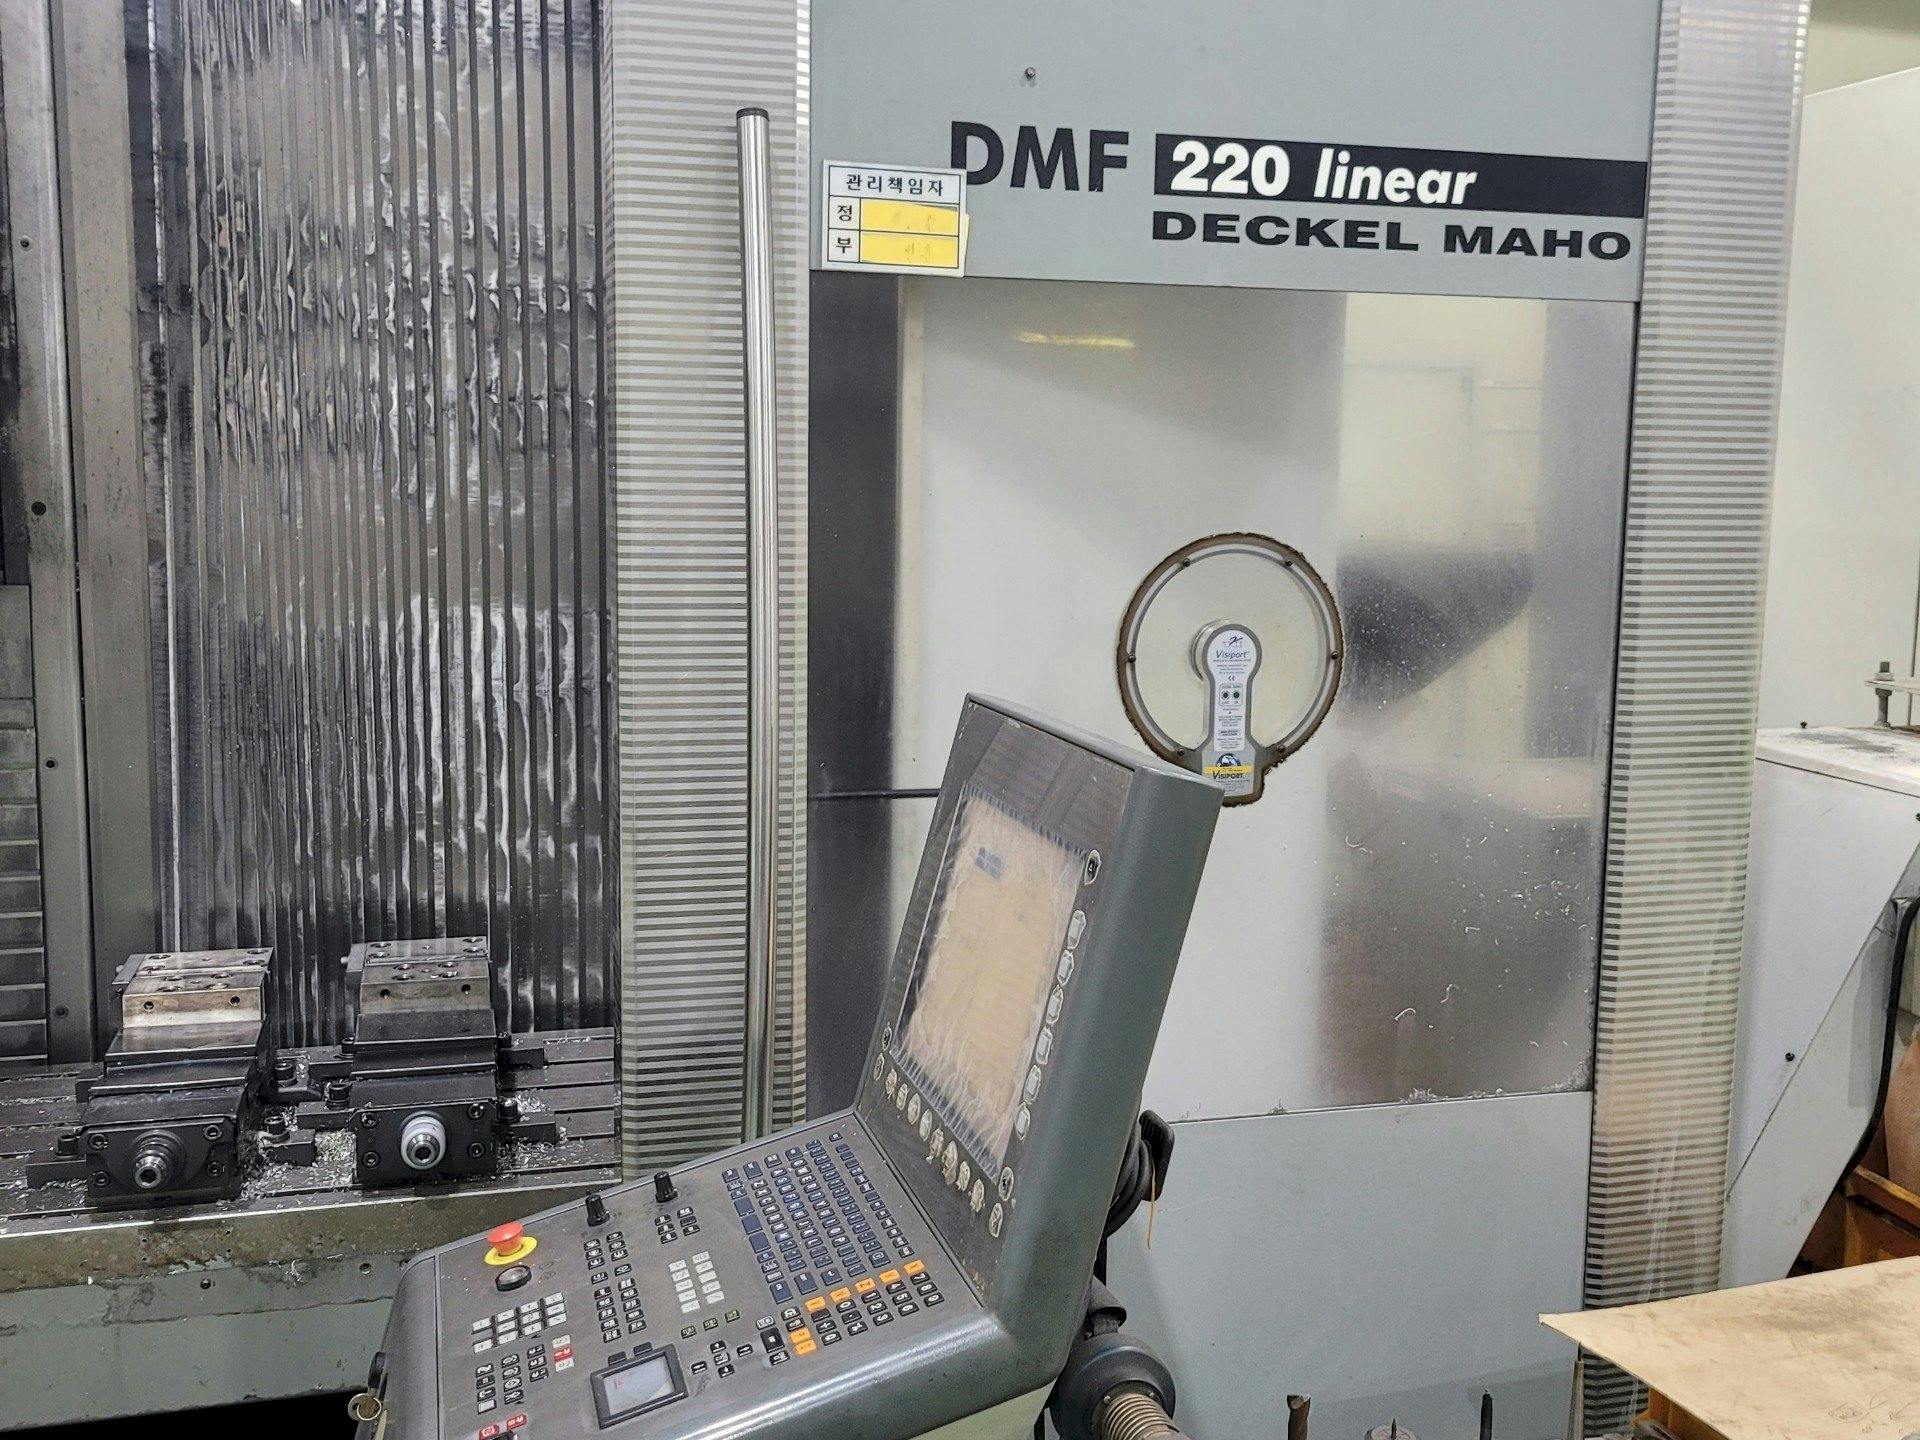 Vista frontale della macchina DECKEL MAHO DMF 220 Linear